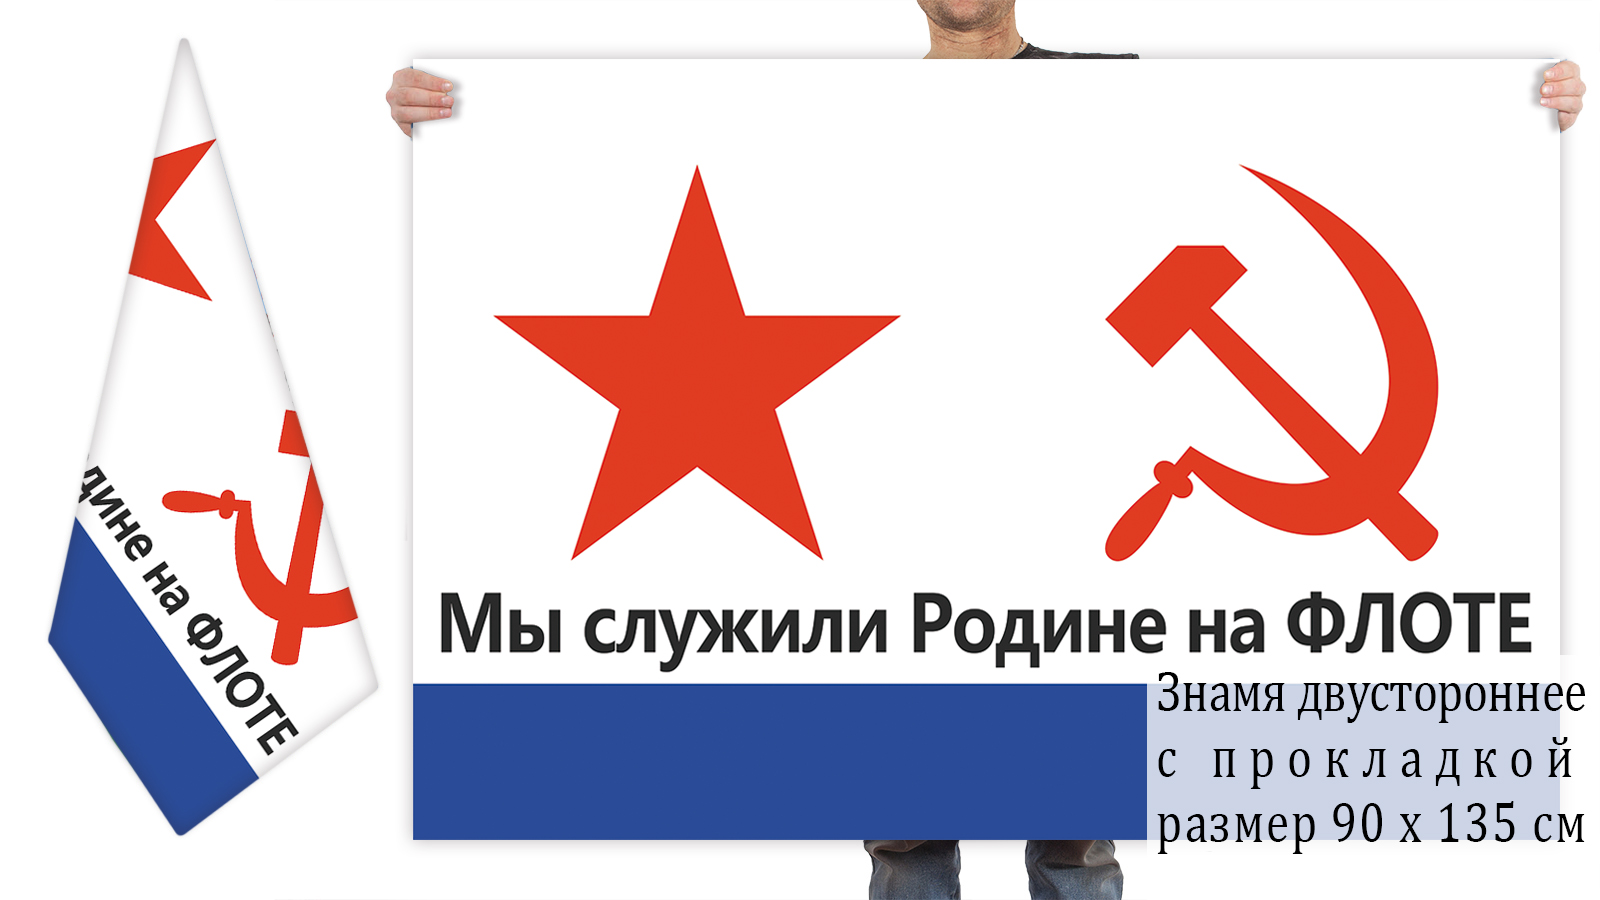 Двусторонний флаг ВМФ СССР с лозунгом